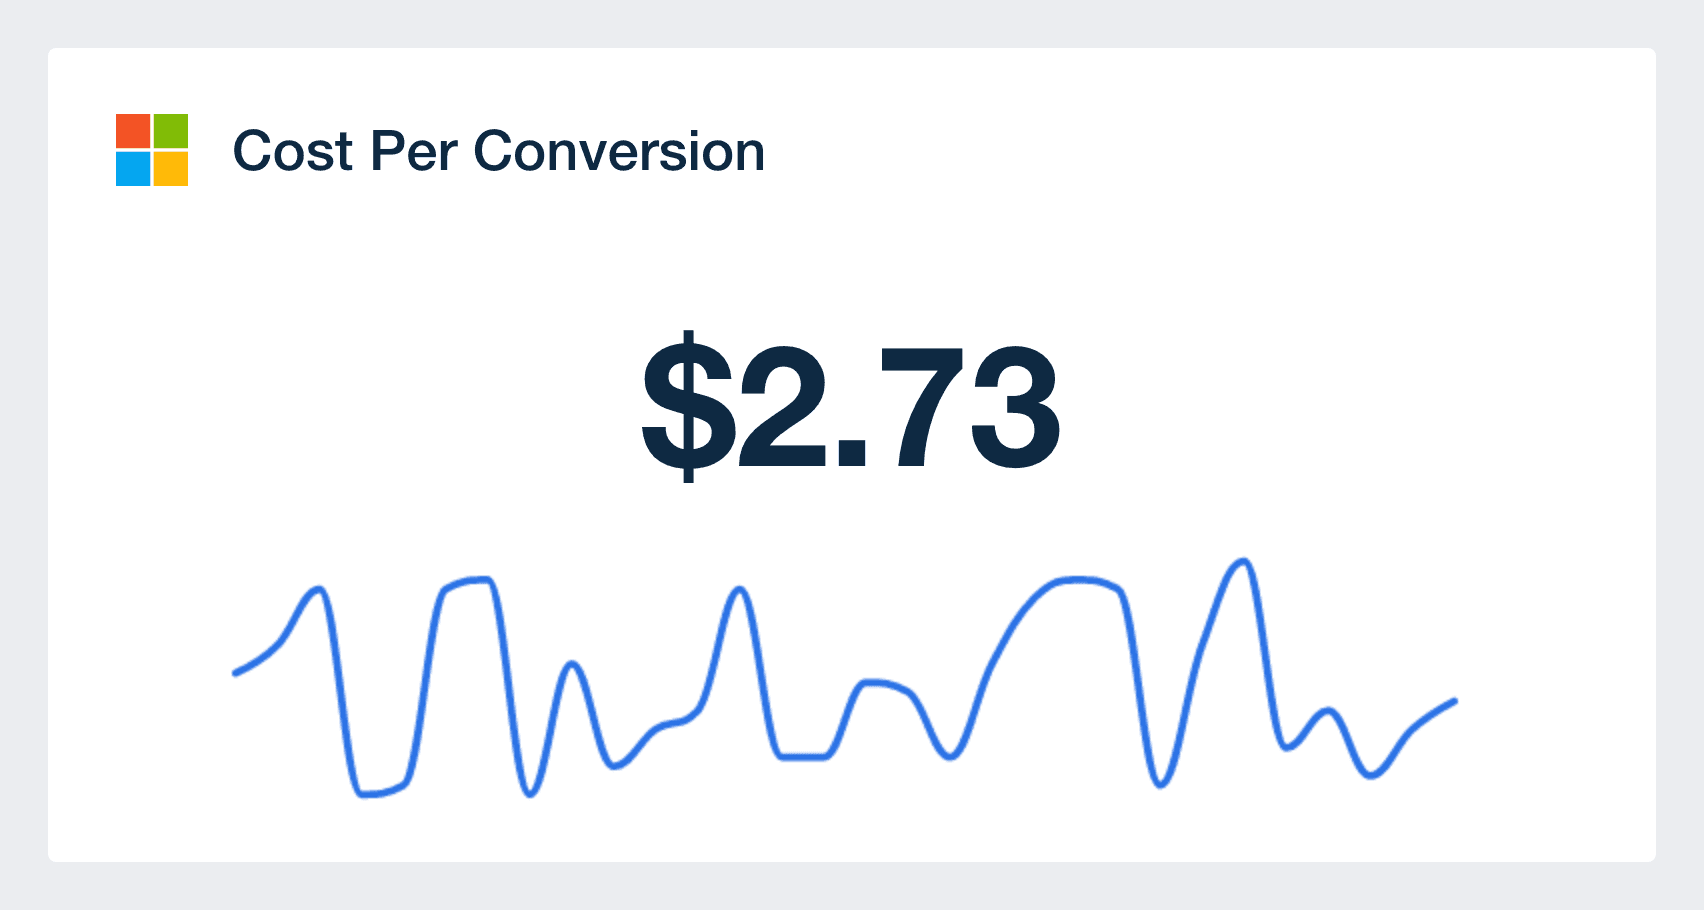 bing ads cost per conversion metric in dashboard